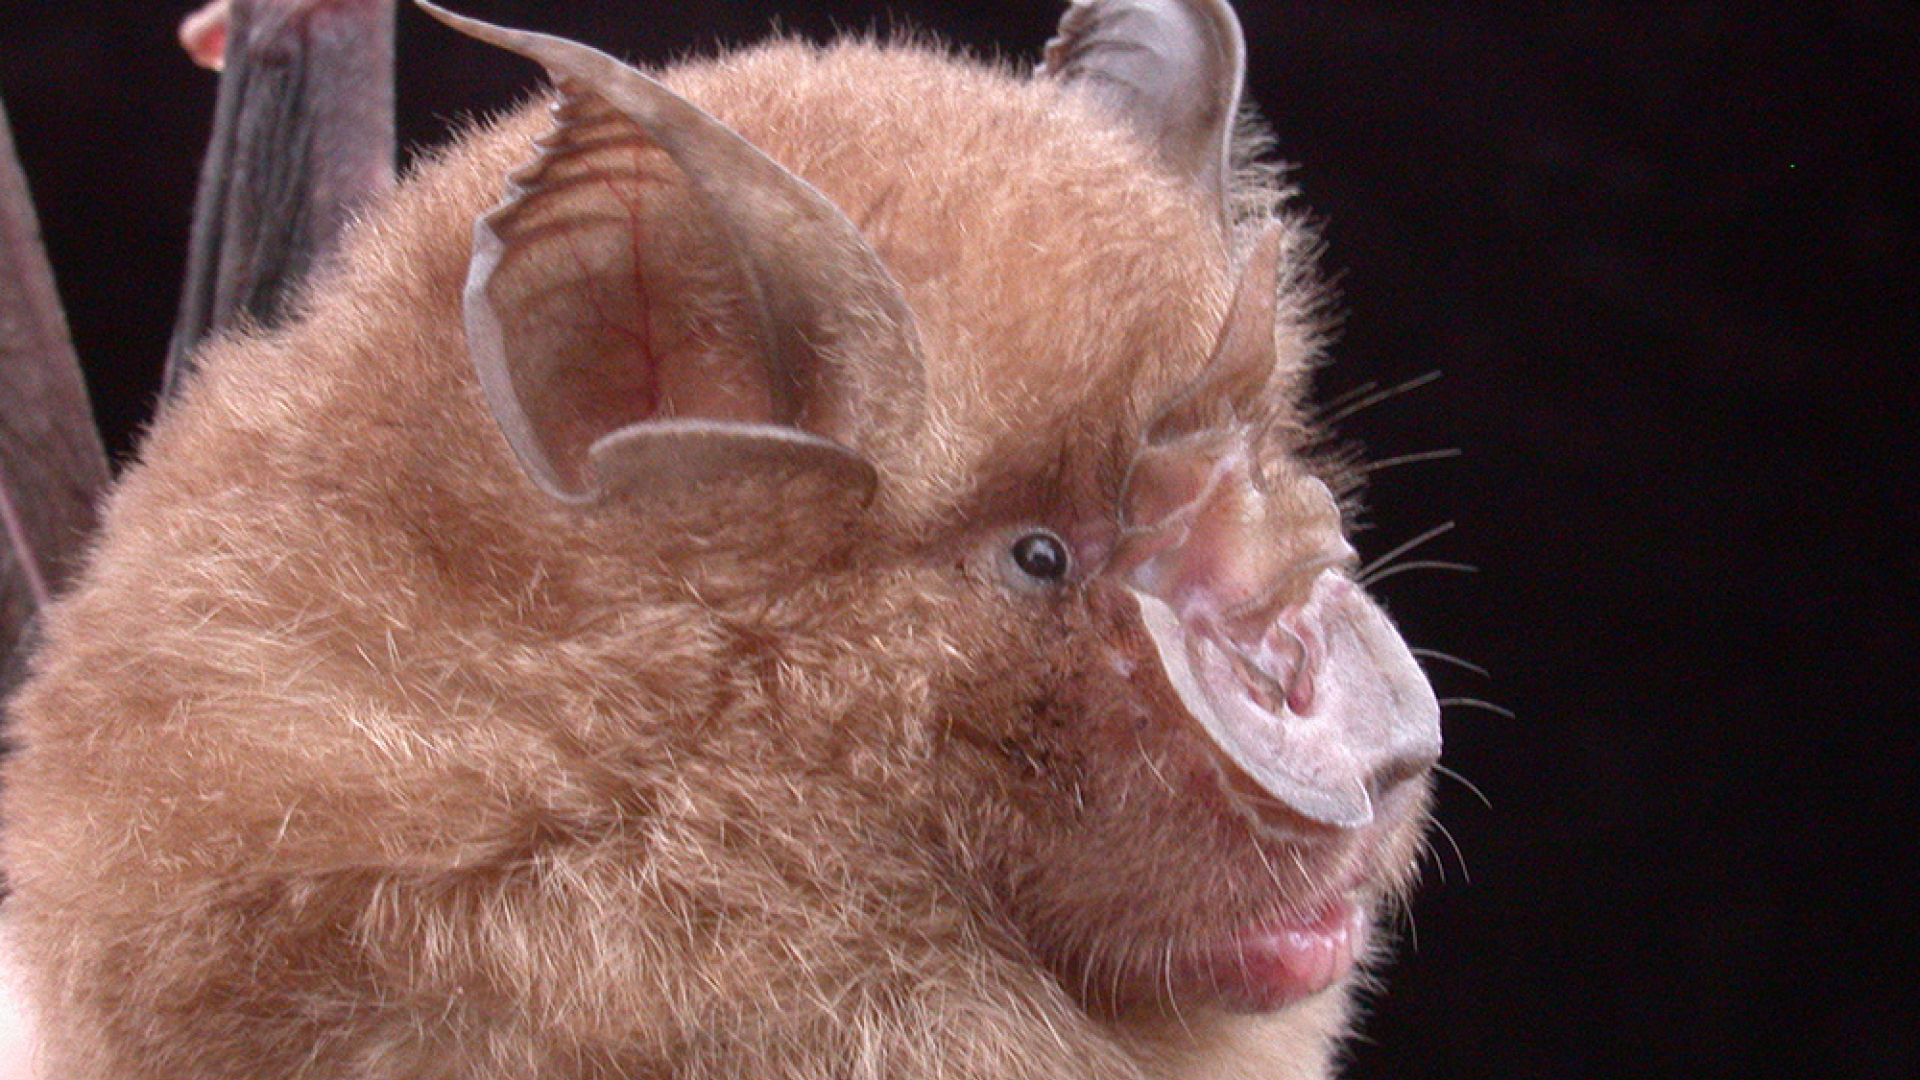 Profile of Horseshoe Bat's face.